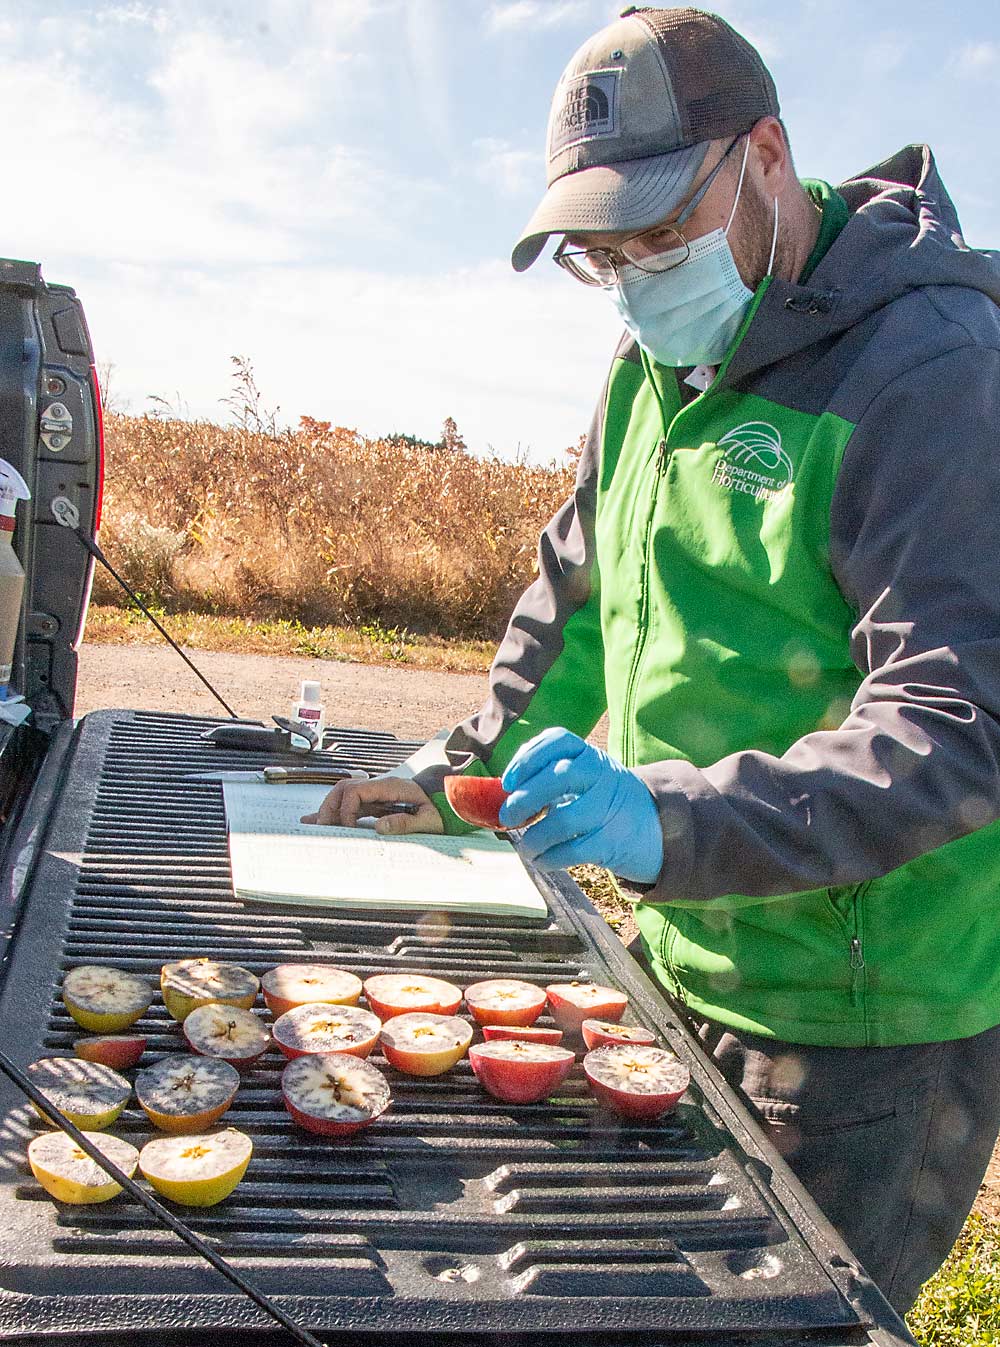 کریس گوتشالک آزمایش لک نشاسته را ارزیابی می کند تا رسیدن یک رقم سیب سخت از Great Apple Lakes Cider Apple Collection در مرکز تحقیقات کلارکسویل دانشگاه ایالتی میشیگان در ماه اکتبر انجام شود.  (مت میلکوویچ / پرورش دهنده خوب میوه)